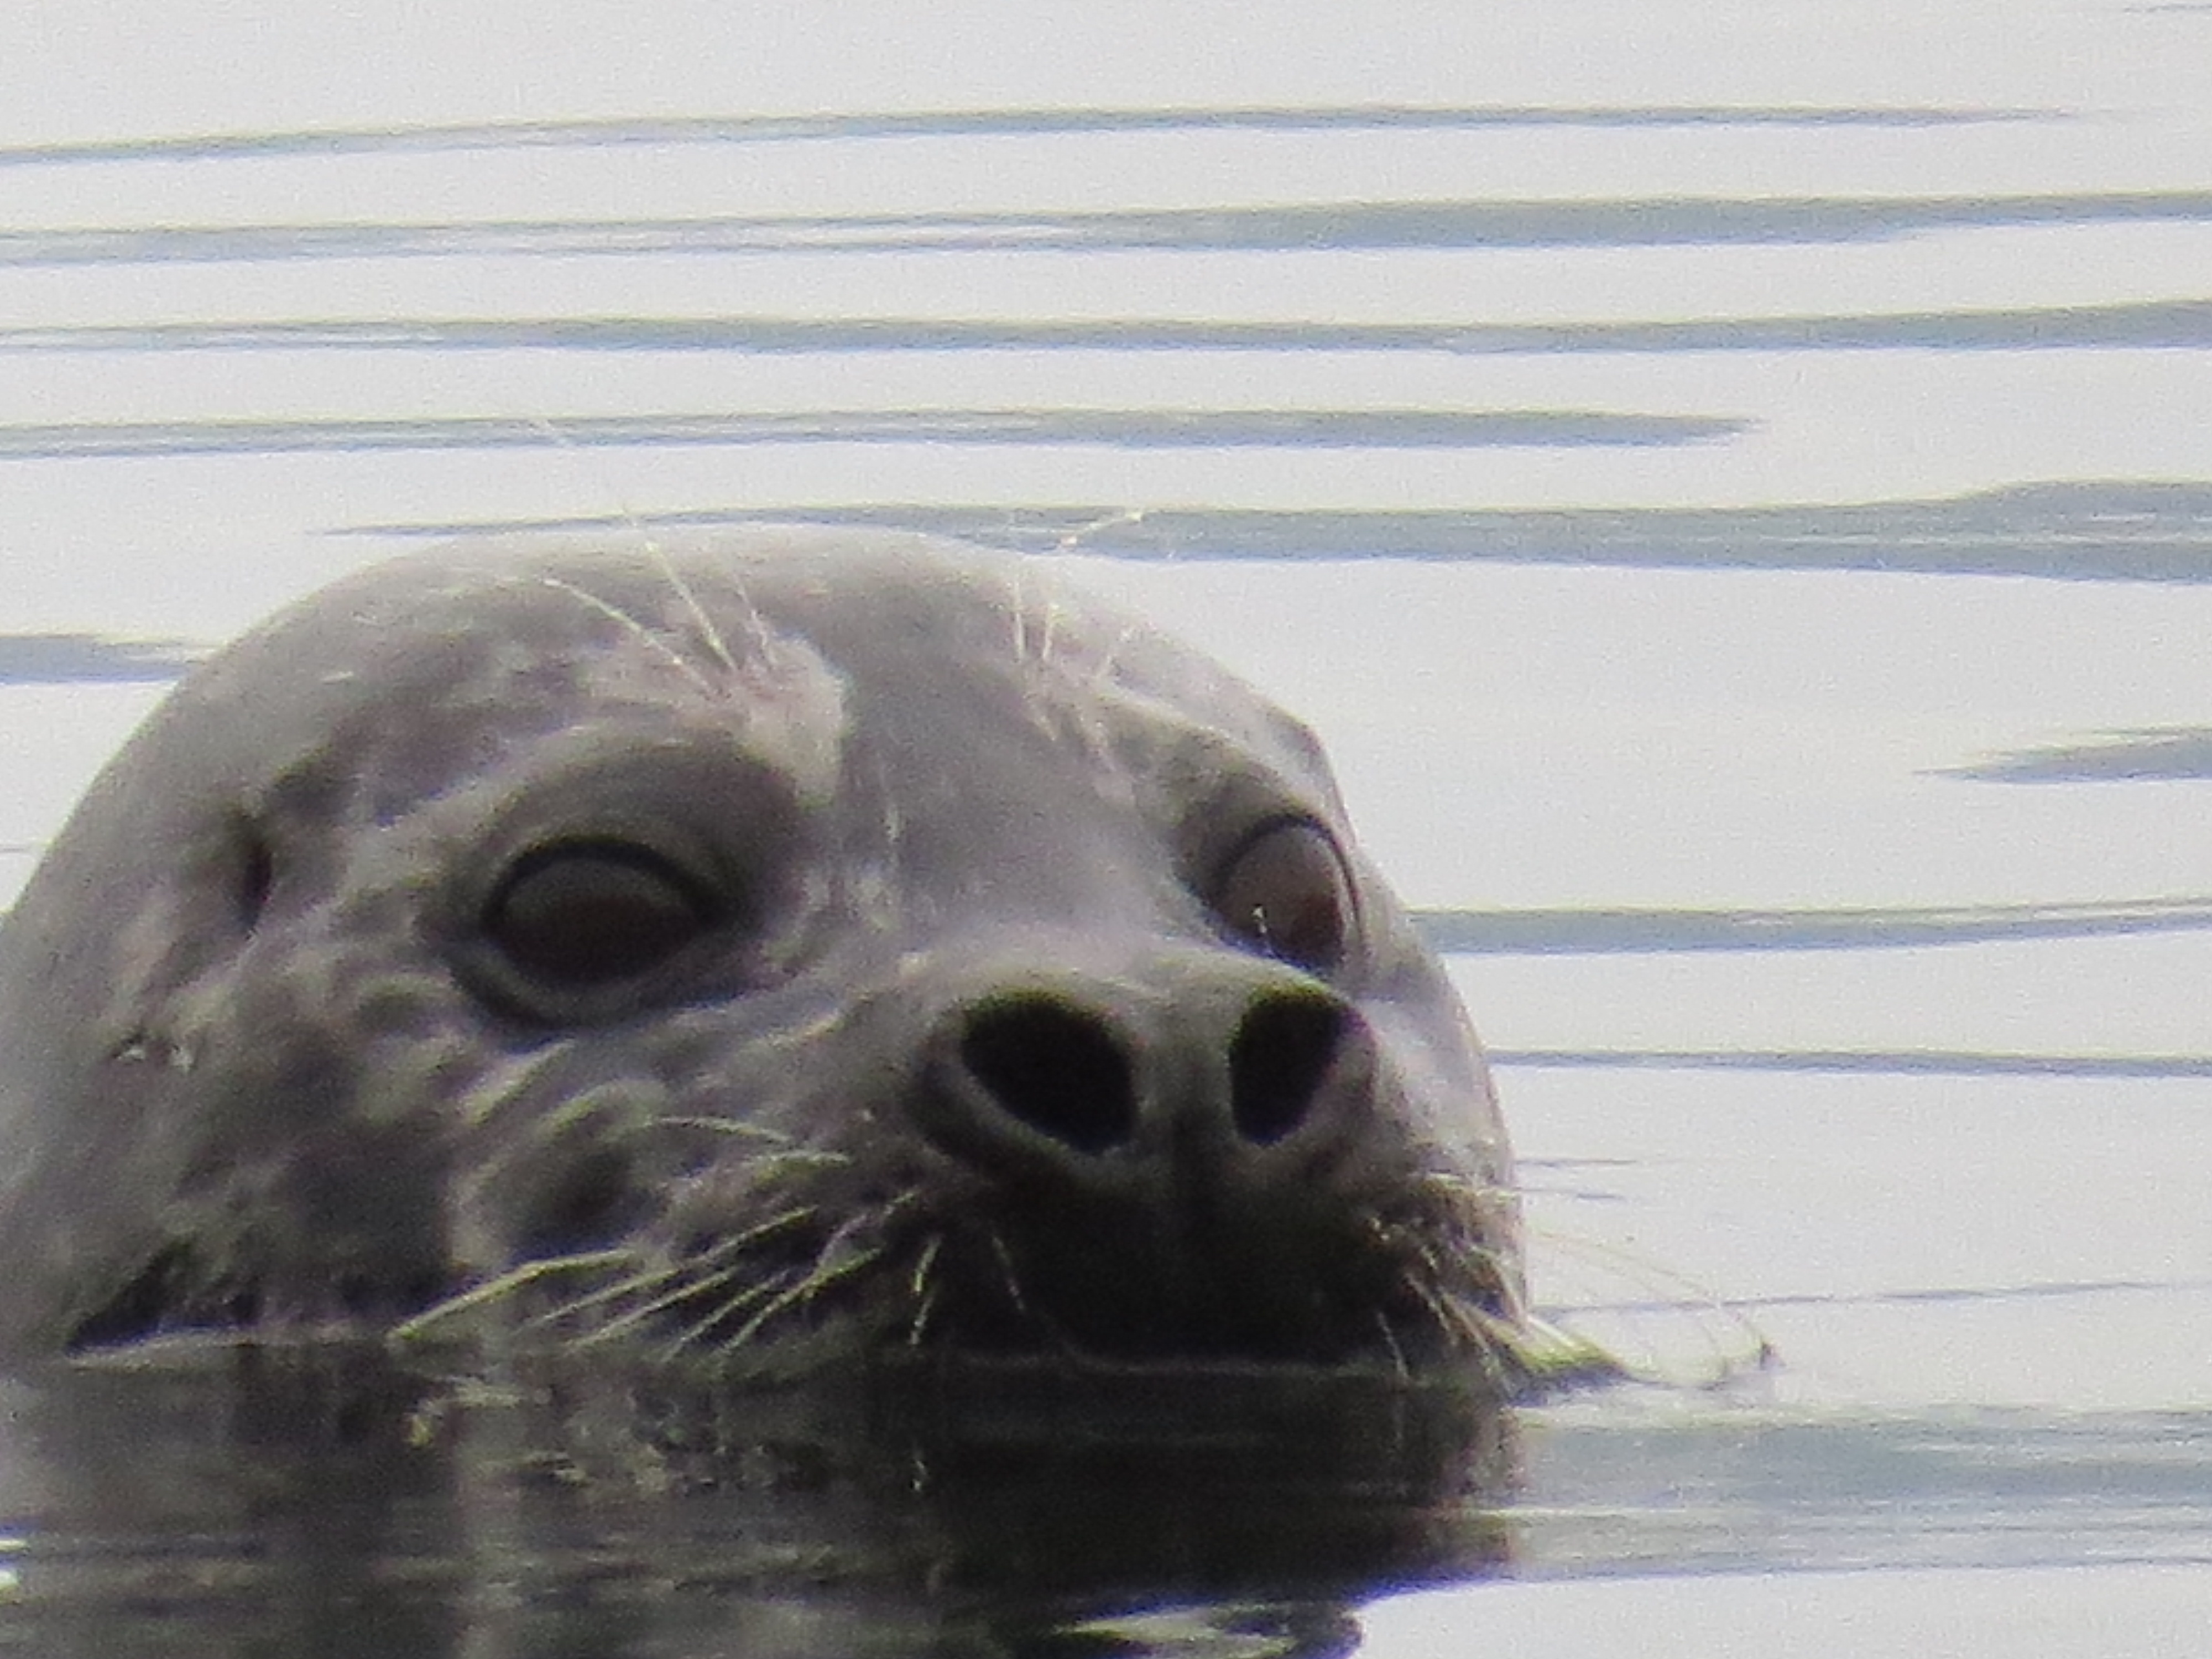 Seal in Unalaska Bay (photo by Jennifer Van Deventer)